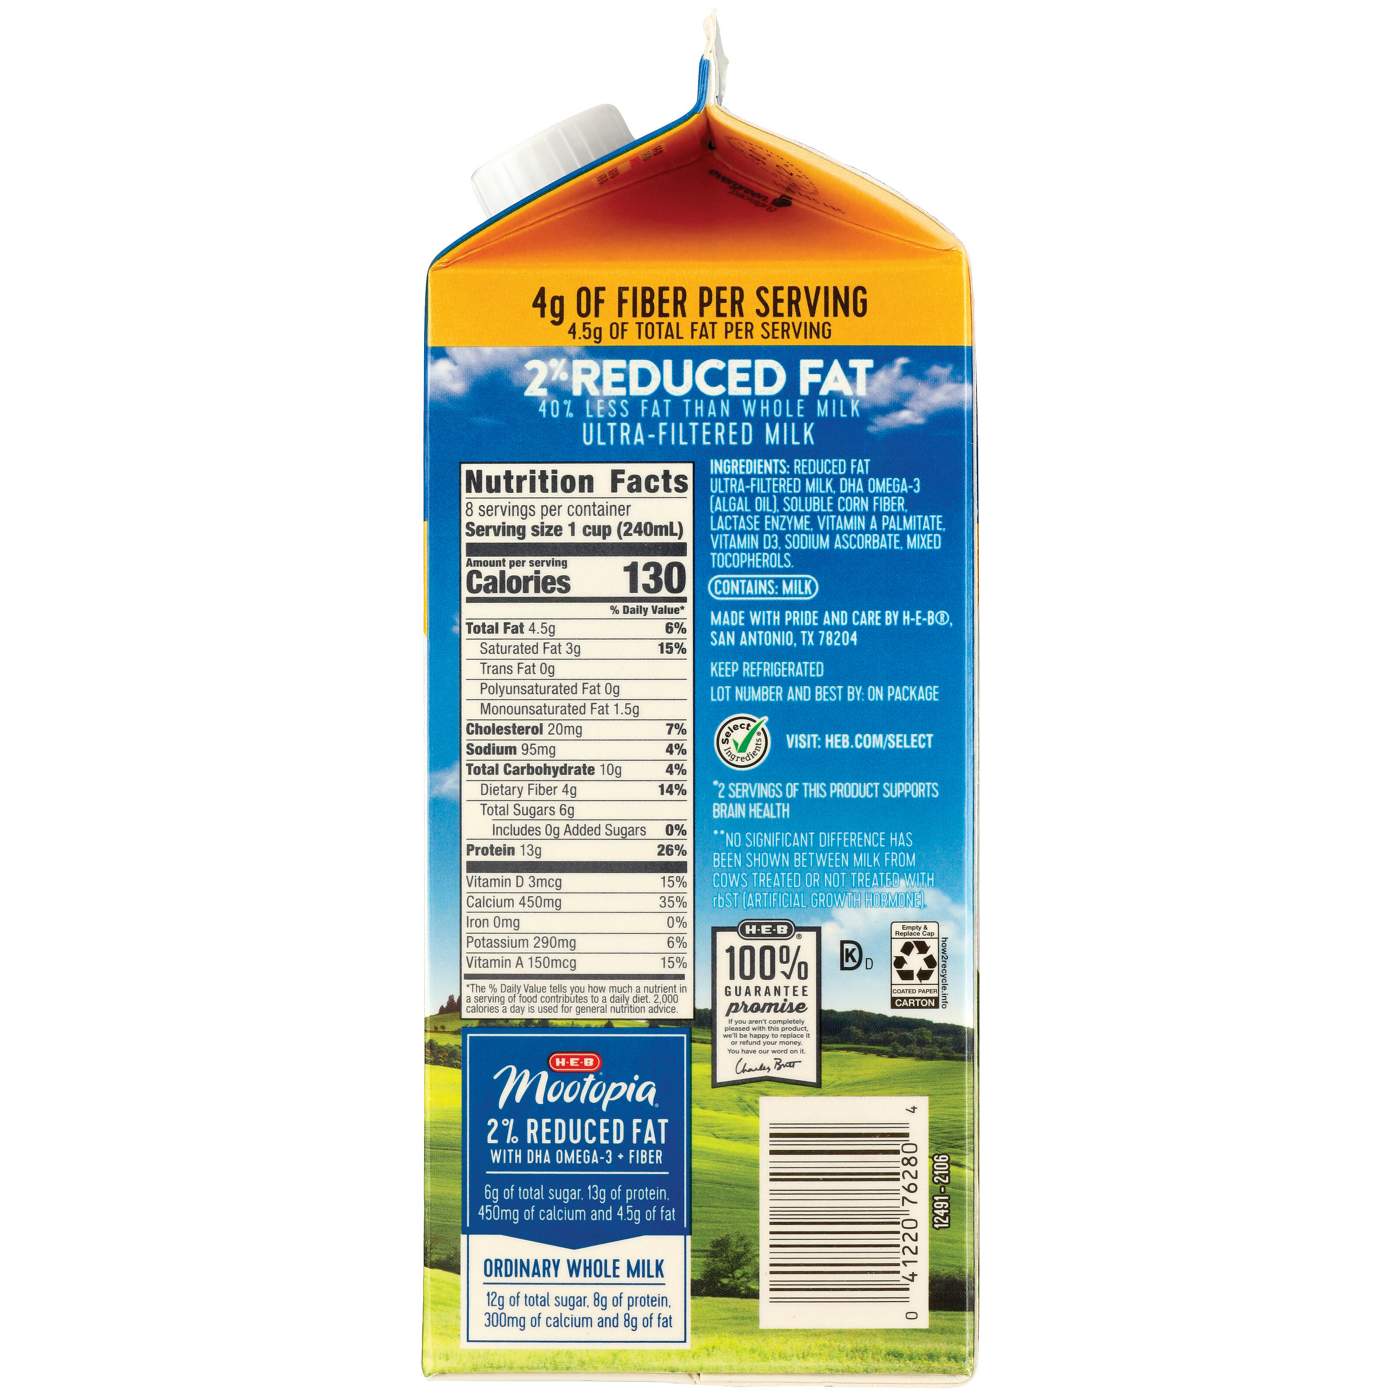 H-E-B Mootopia Lactose-Free DHA Omega-3 2% Reduced Fat Milk; image 2 of 2